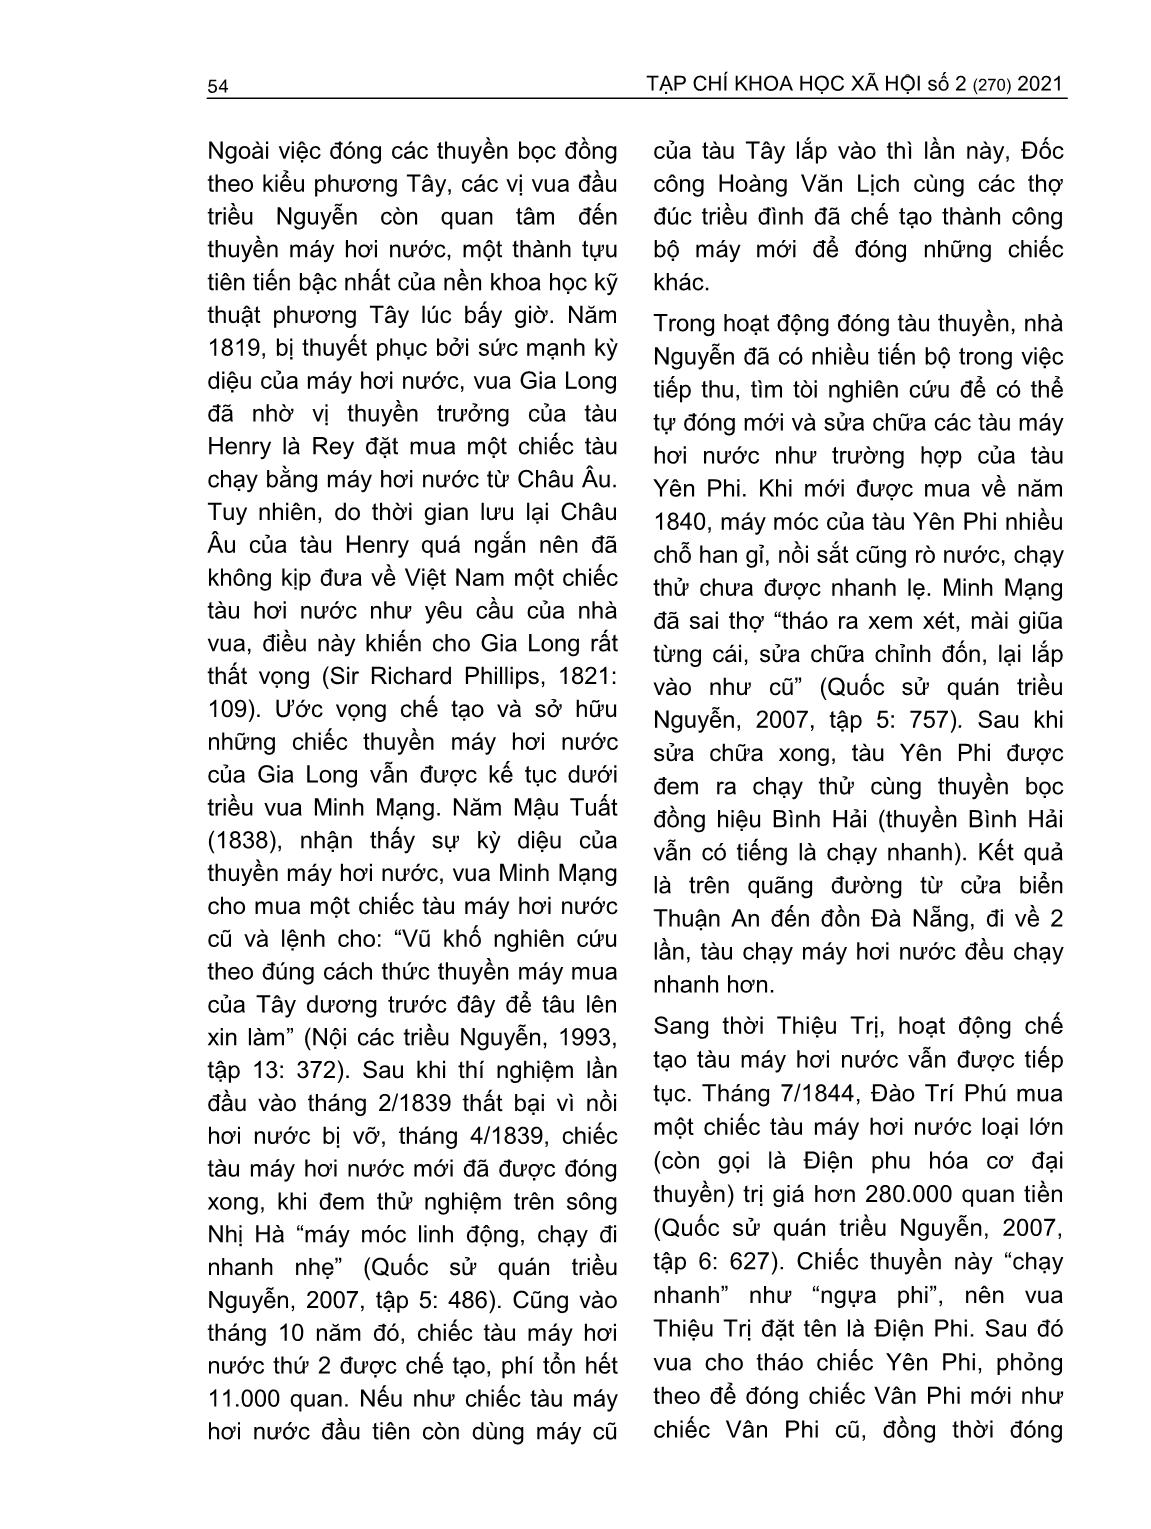 Việc tiếp thu, áp dụng kỹ thuật quân sự phương Tây của triều Nguyễn (1802-1858) trang 5